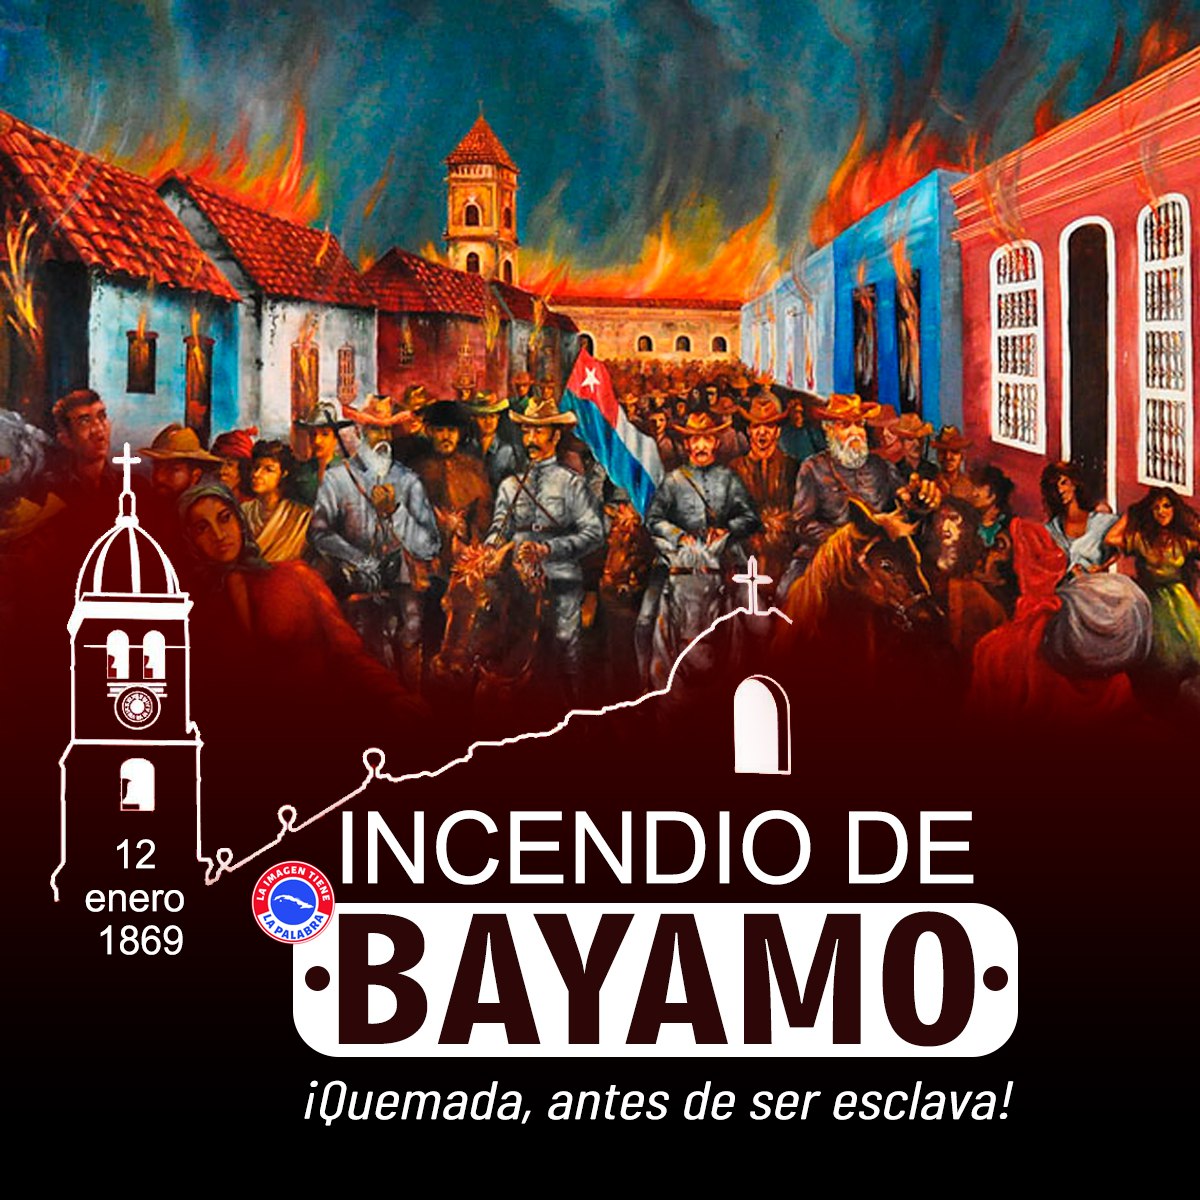 Padecer penurias antes que rendirse, fue un acto sublime del pueblo bayamés. #CubaViveEnSuHistoria @DiazCanelB @MinfarC